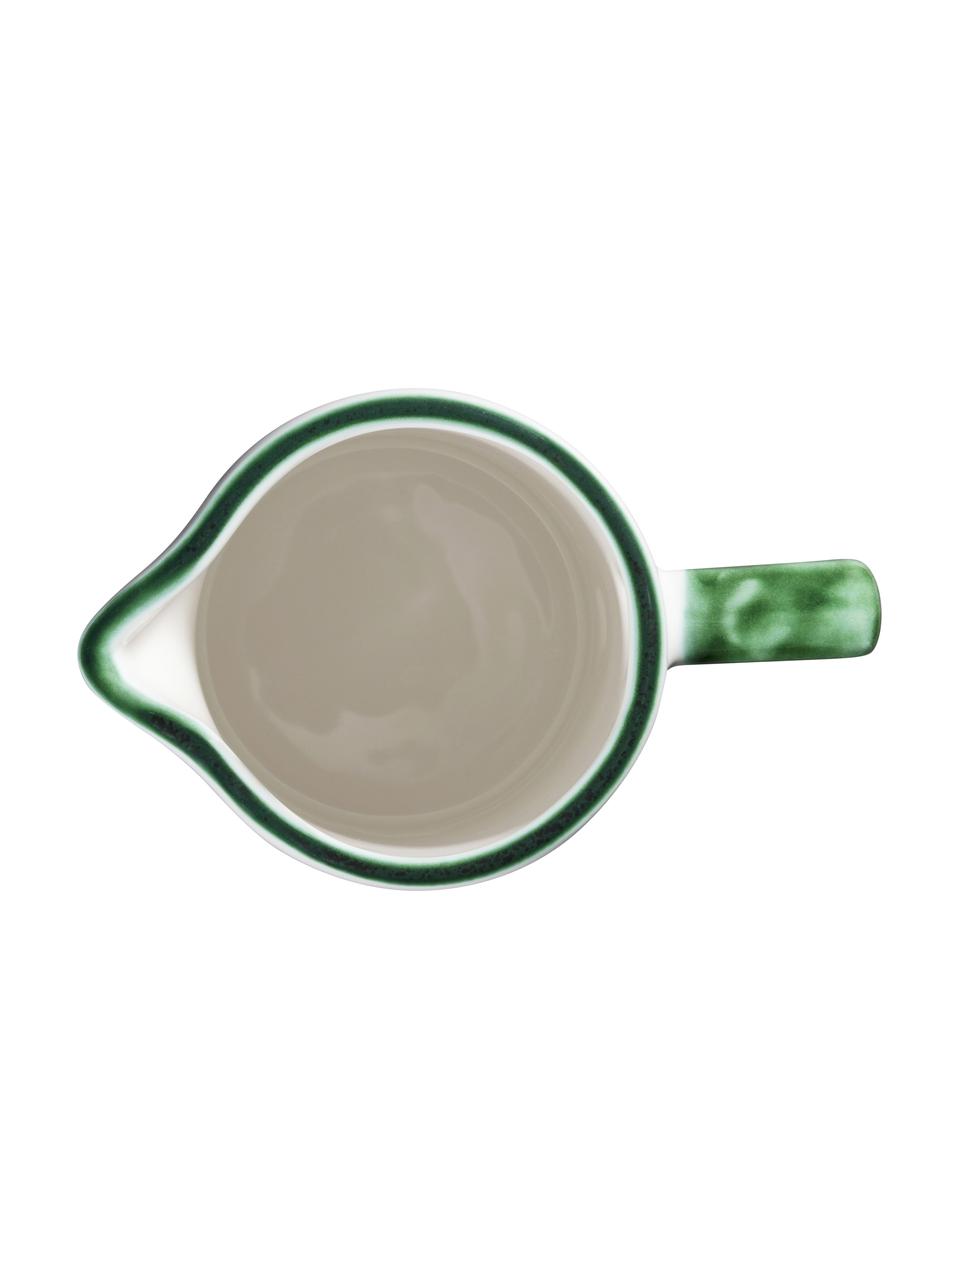 Pichet à eau artisanal Cerf Vert, Céramique, Blanc, vert, 0,7 l